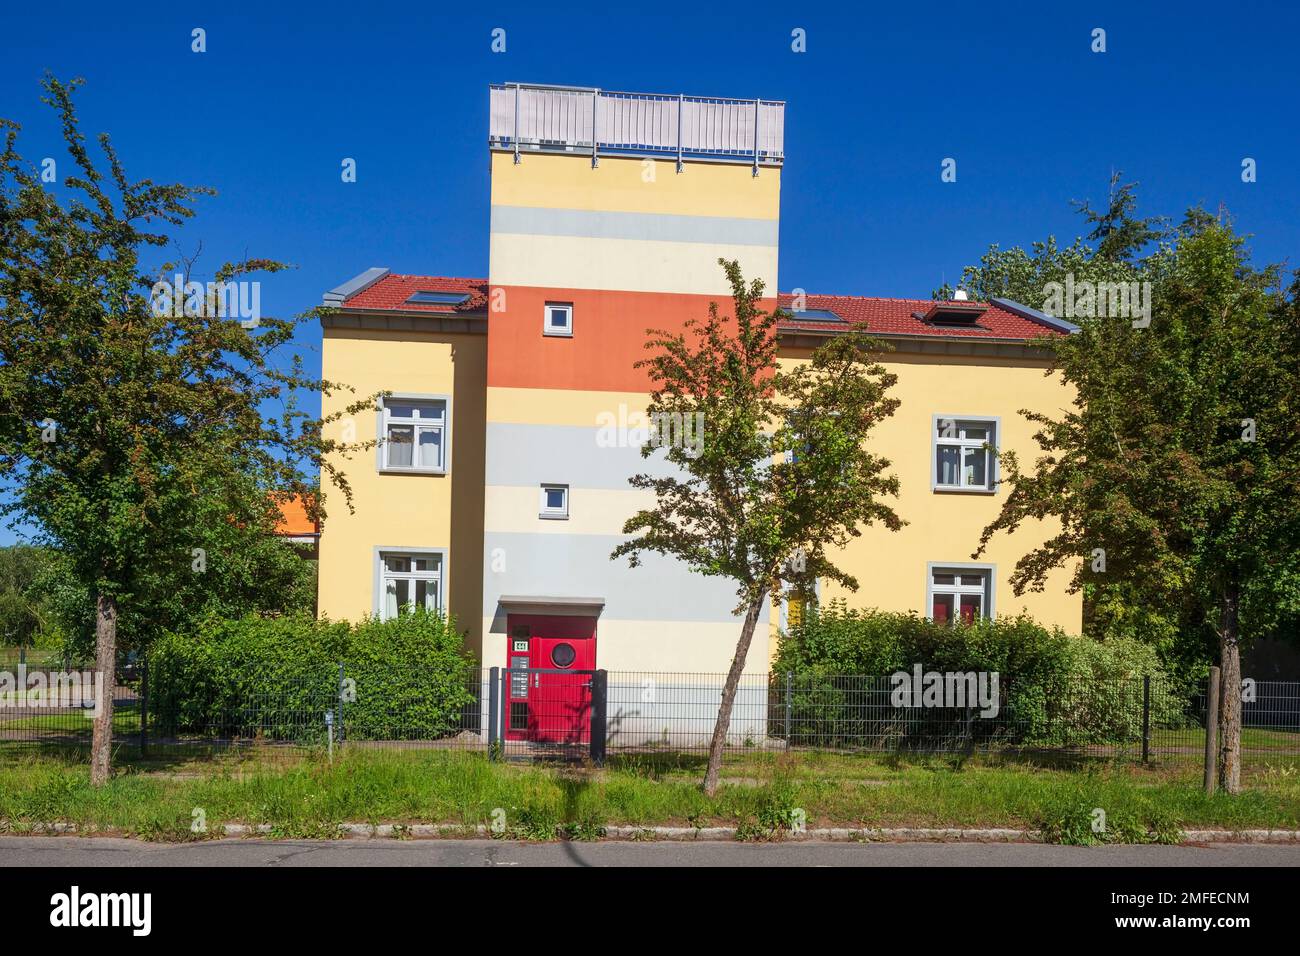 Casa di appartamenti moderna e colorata, edificio residenziale, Greifswald, Meclemburgo-Pomerania occidentale, Germania Foto Stock